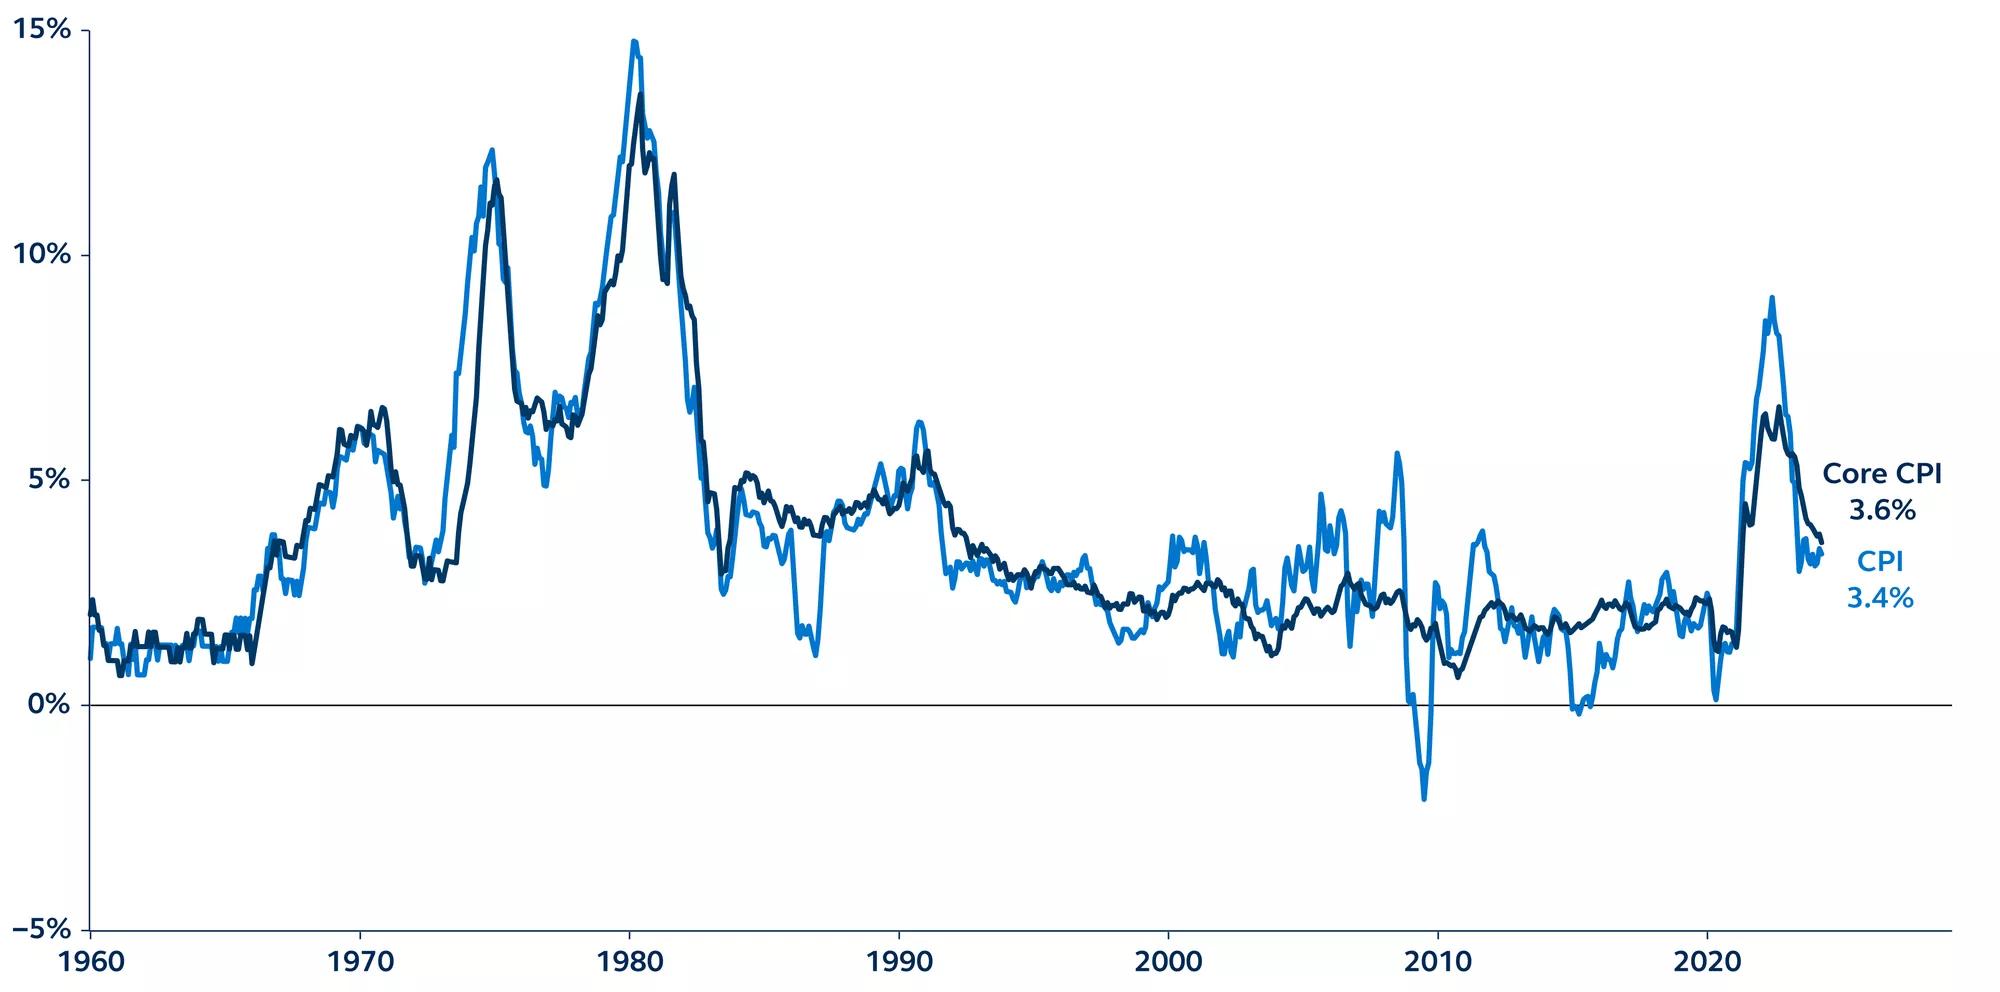 Consumer Price Index since 1960